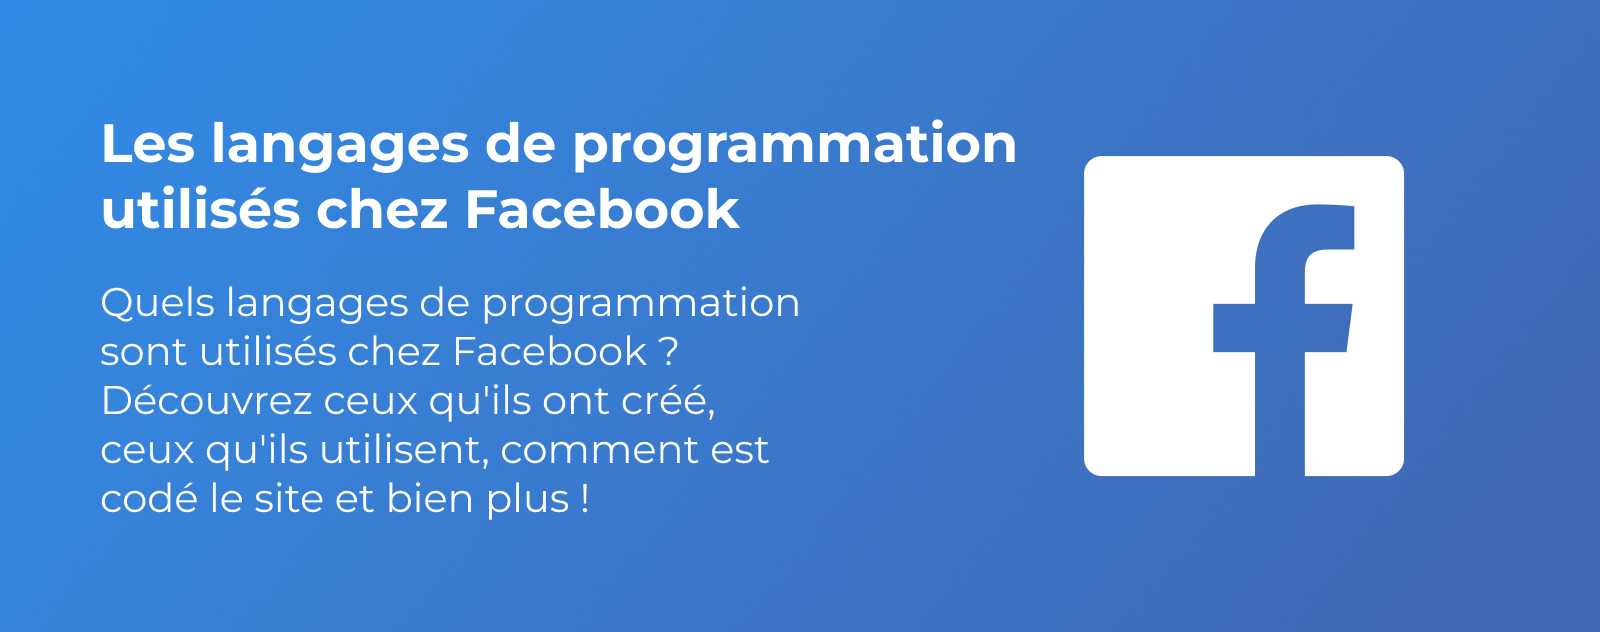 Les langages de programmation utilisés chez Facebook (Meta)